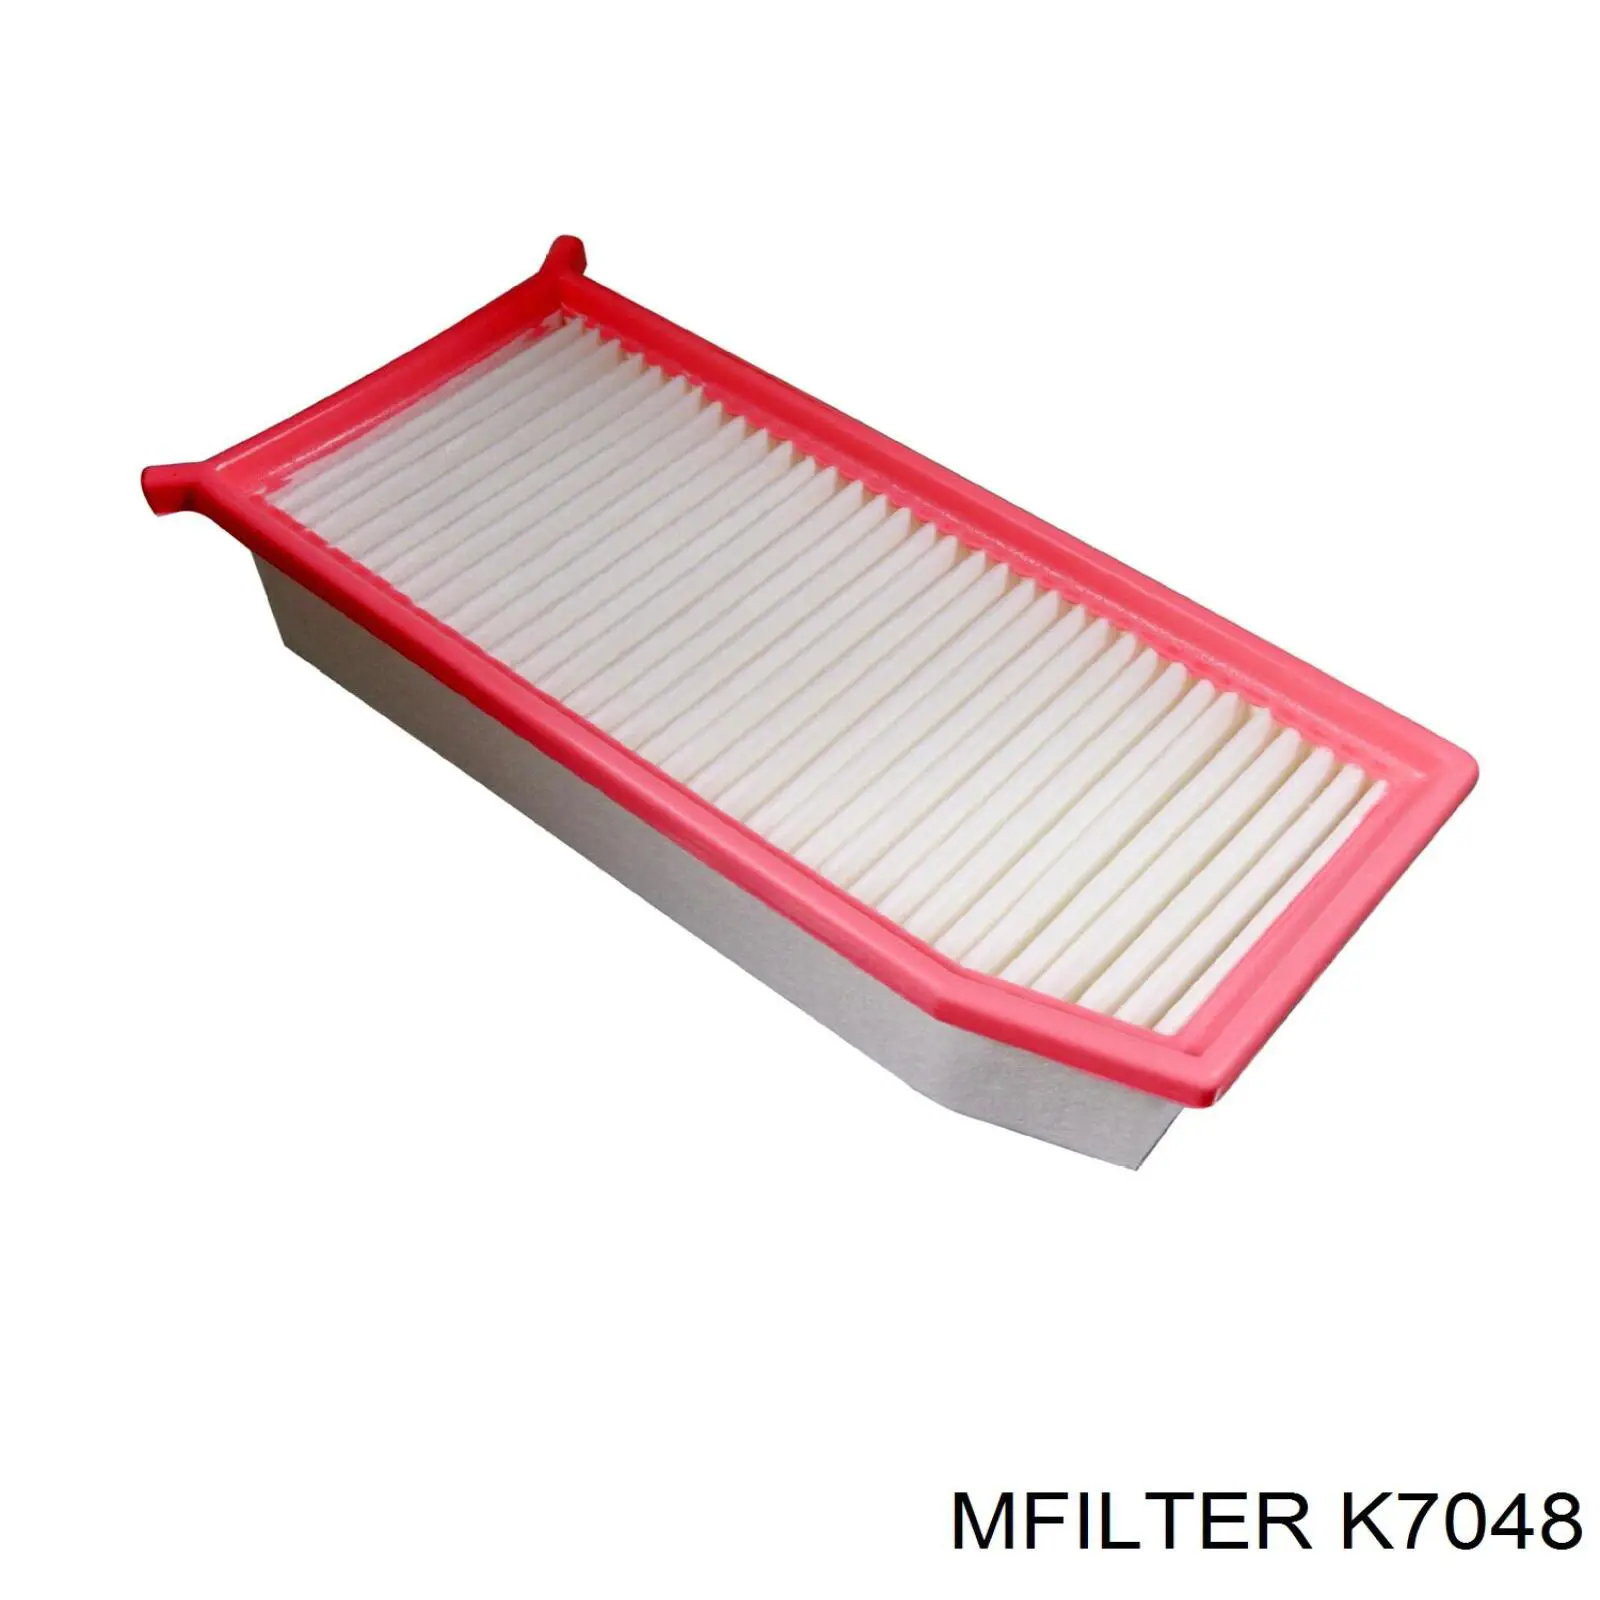 K7048 Mfilter filtro de ar